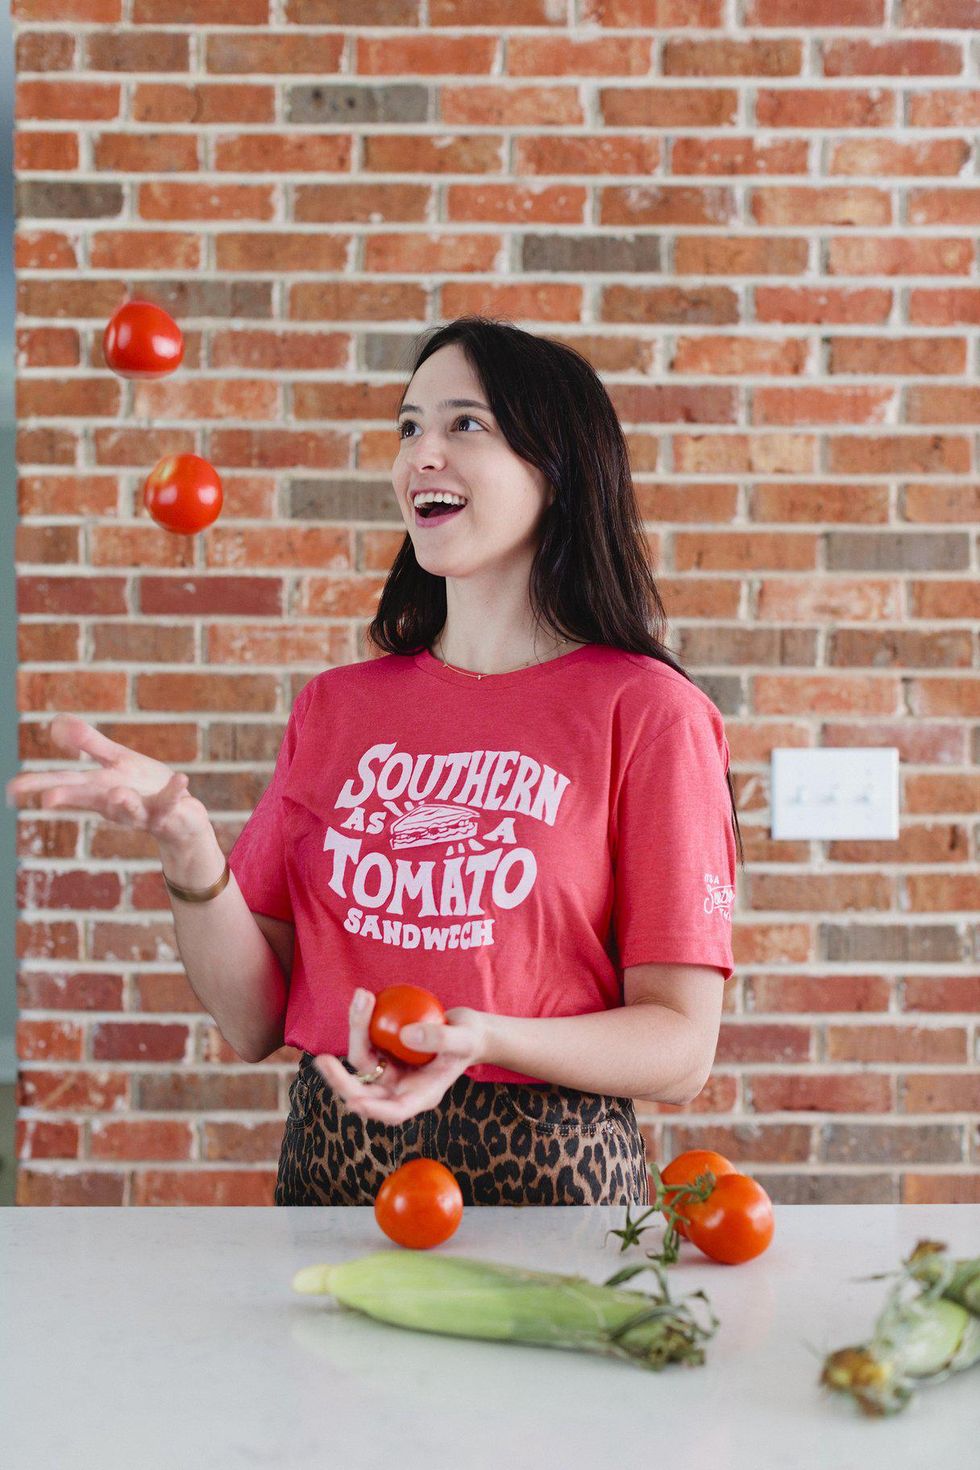 Southern as a Tomato Sandwich Shirt